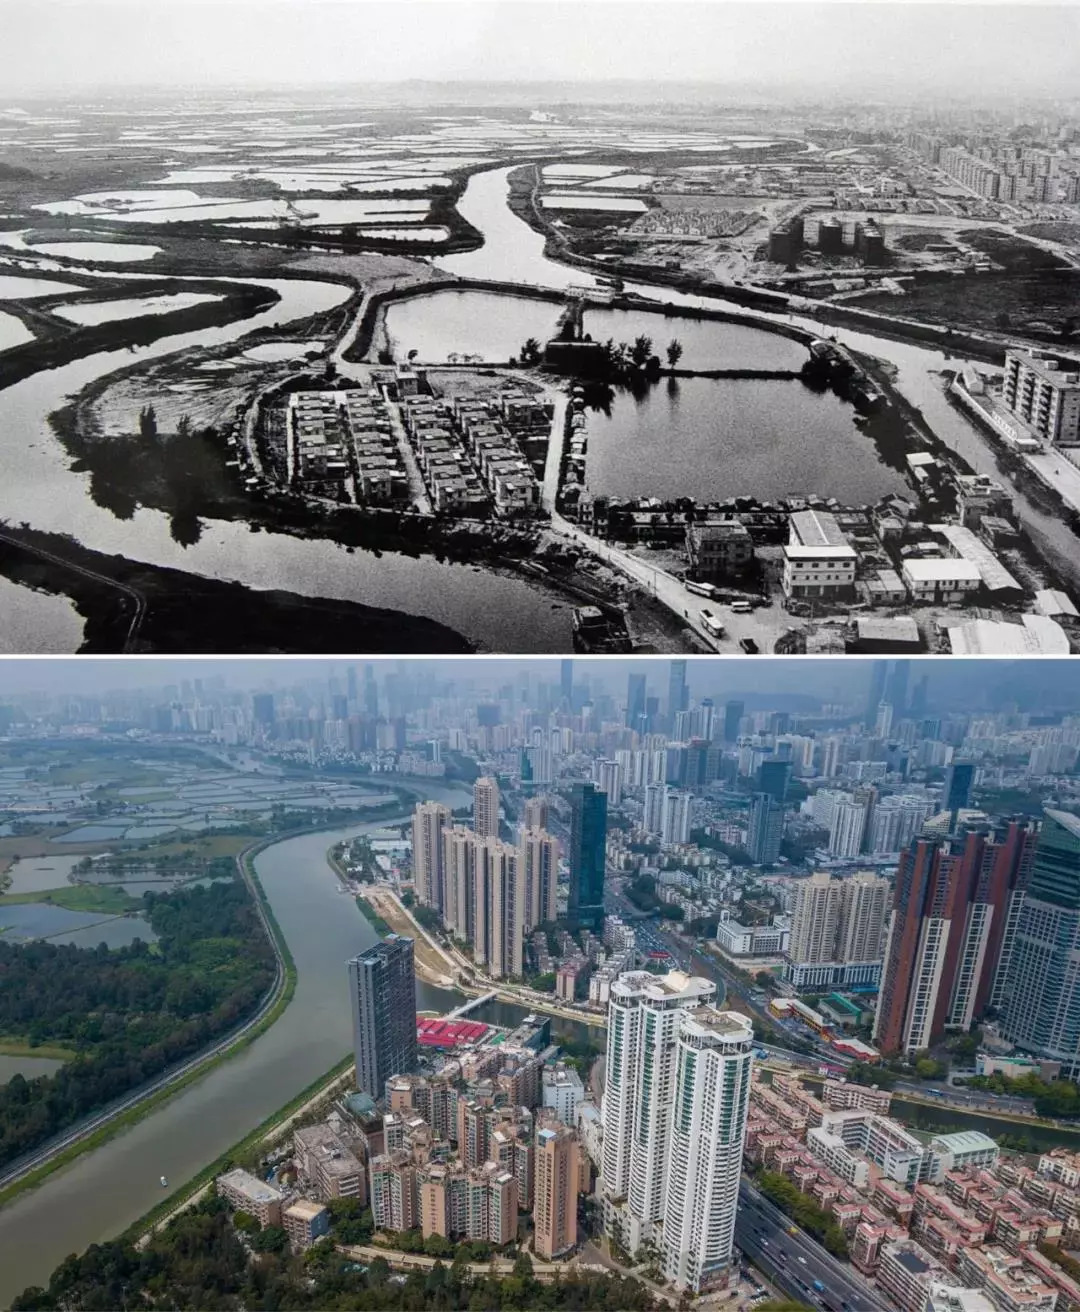 渔民村坐落于深圳河畔,从上世纪70年代水草飘零的渔船人家到改革开放